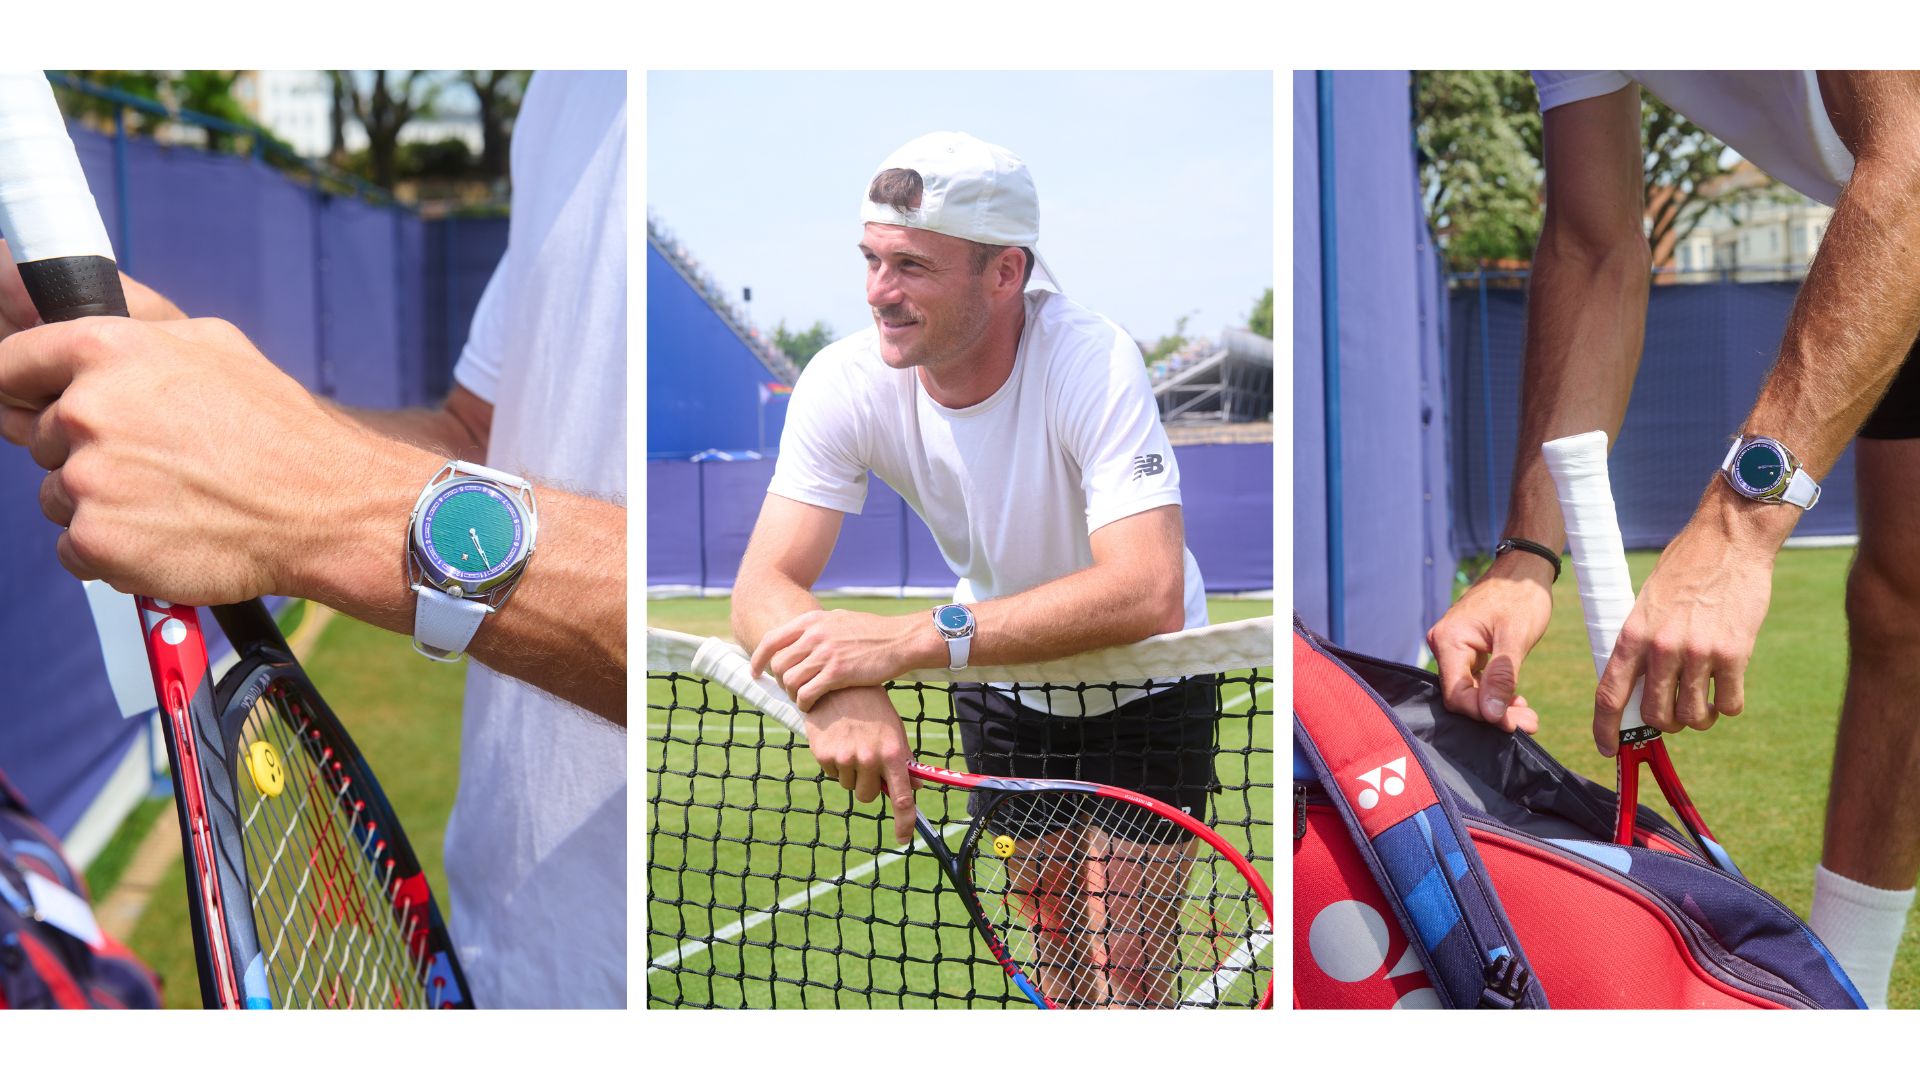 De Bethune est ravi de soutenir le talentueux joueur de tennis, Tommy Paul, lors du premier jour de Wimbledon!